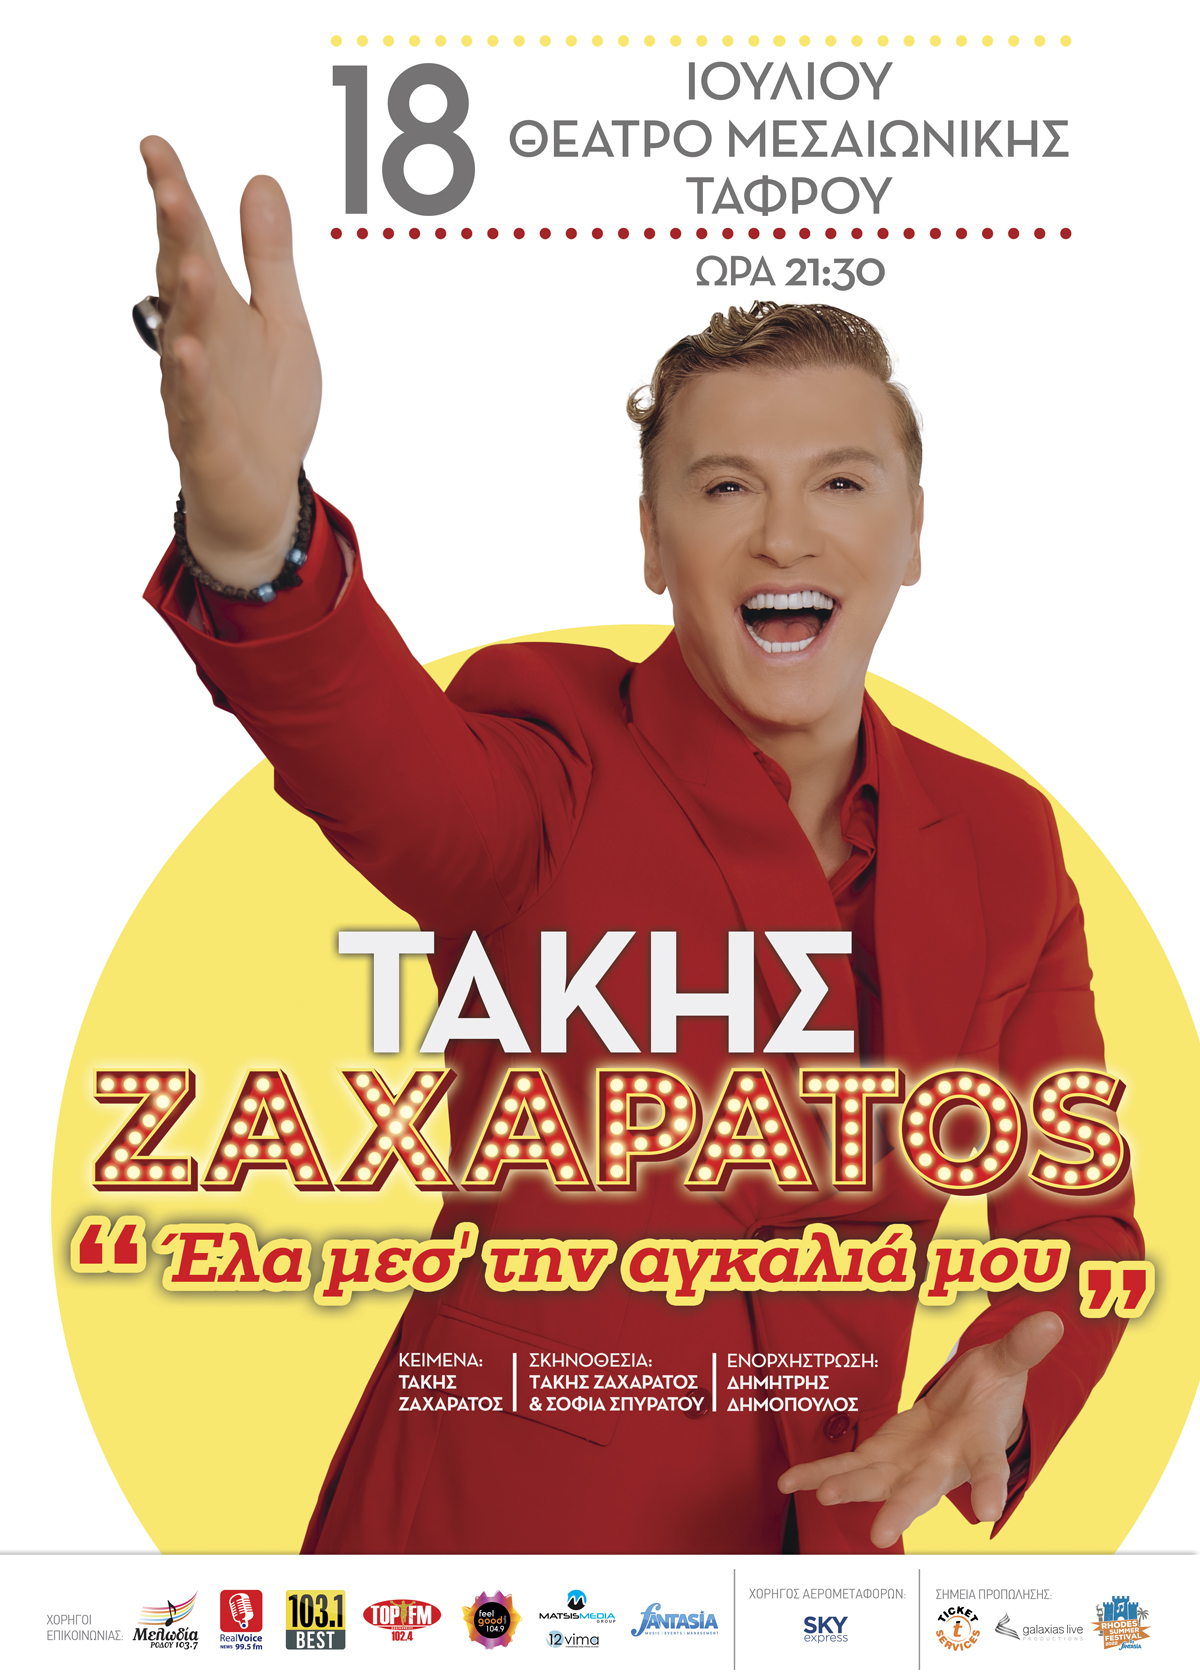 Takis Zacharatos2